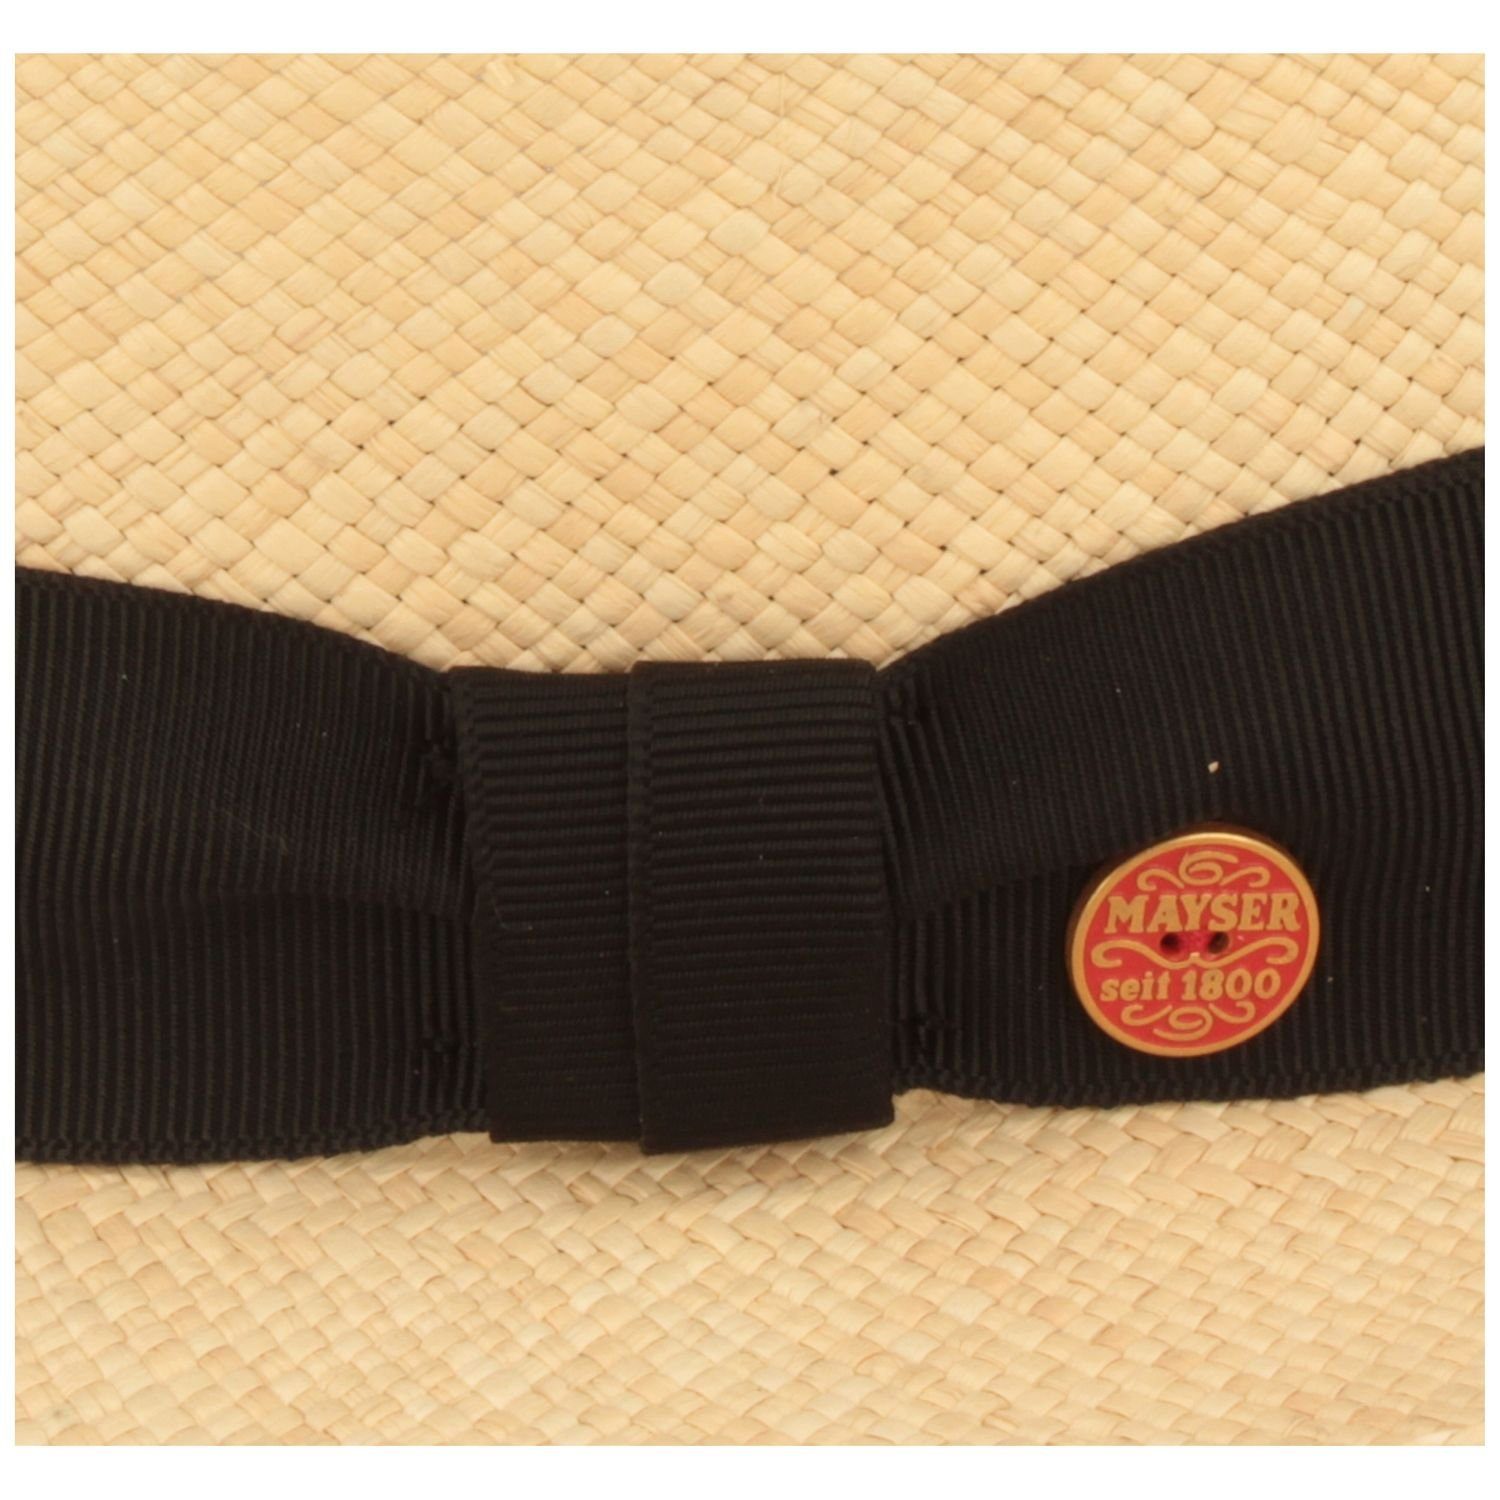 Mayser Strohhut wasserabweisender, hochwerigter Panama UV-Schutz Hut 80 Manuel natur/8001 mit 0004 schwarz